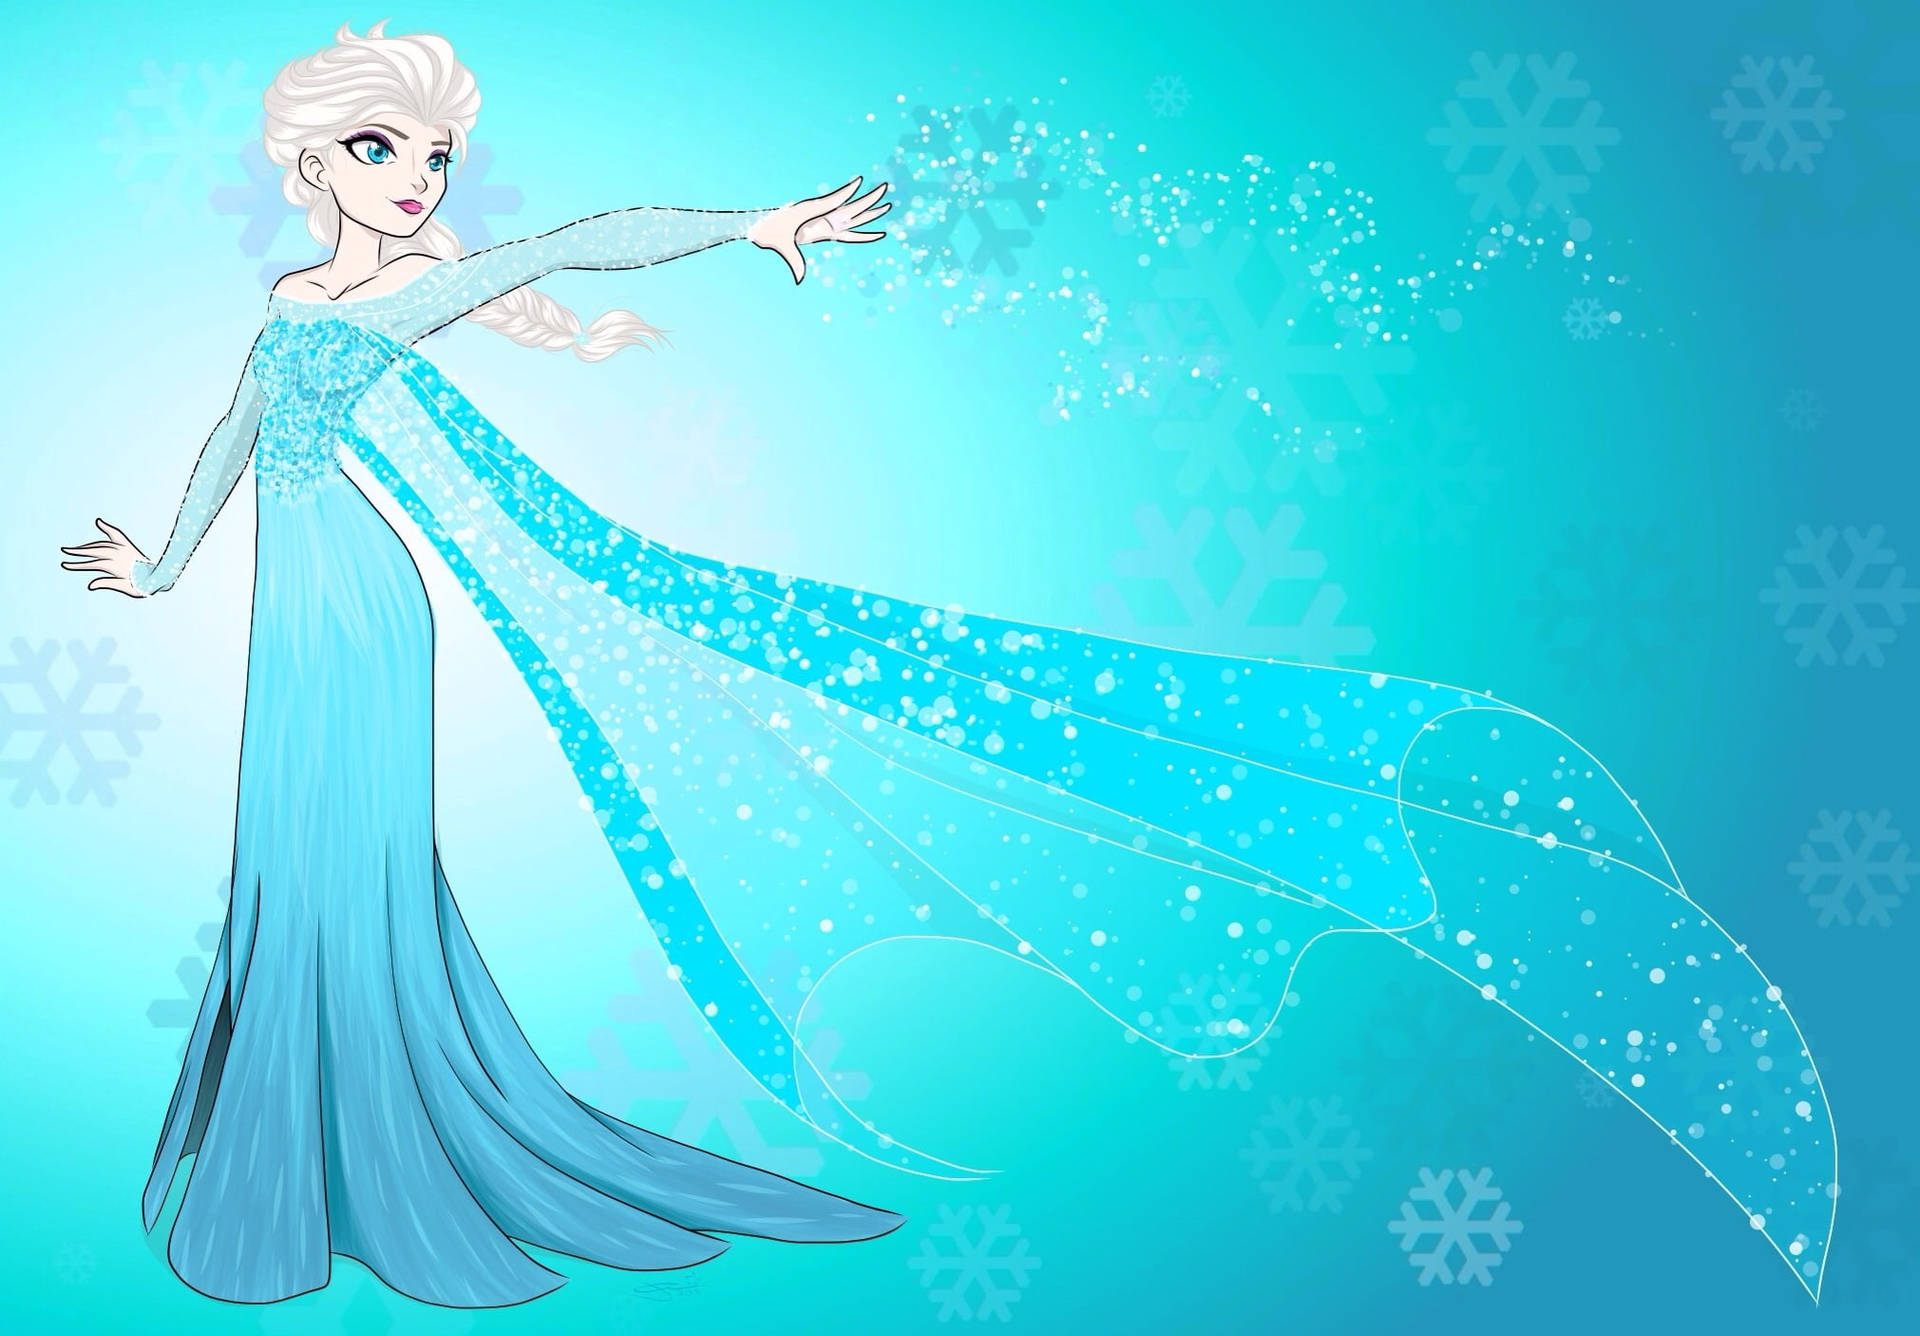 OC Drawing Of Snow Queen Elsa  rFrozen